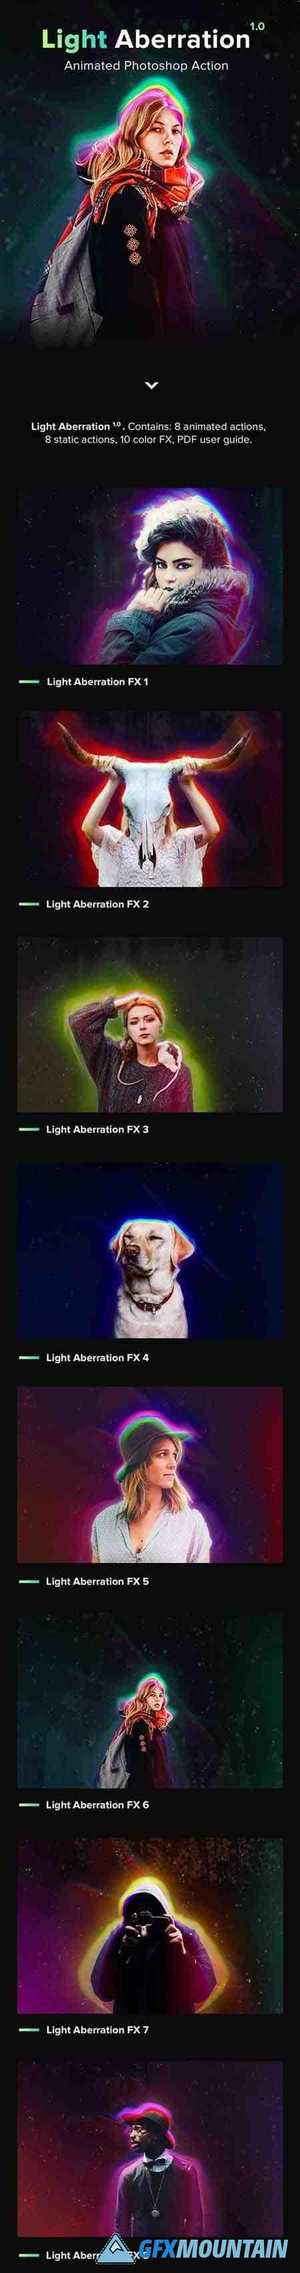 Animated Light Aberration - Photoshop Action 22505480